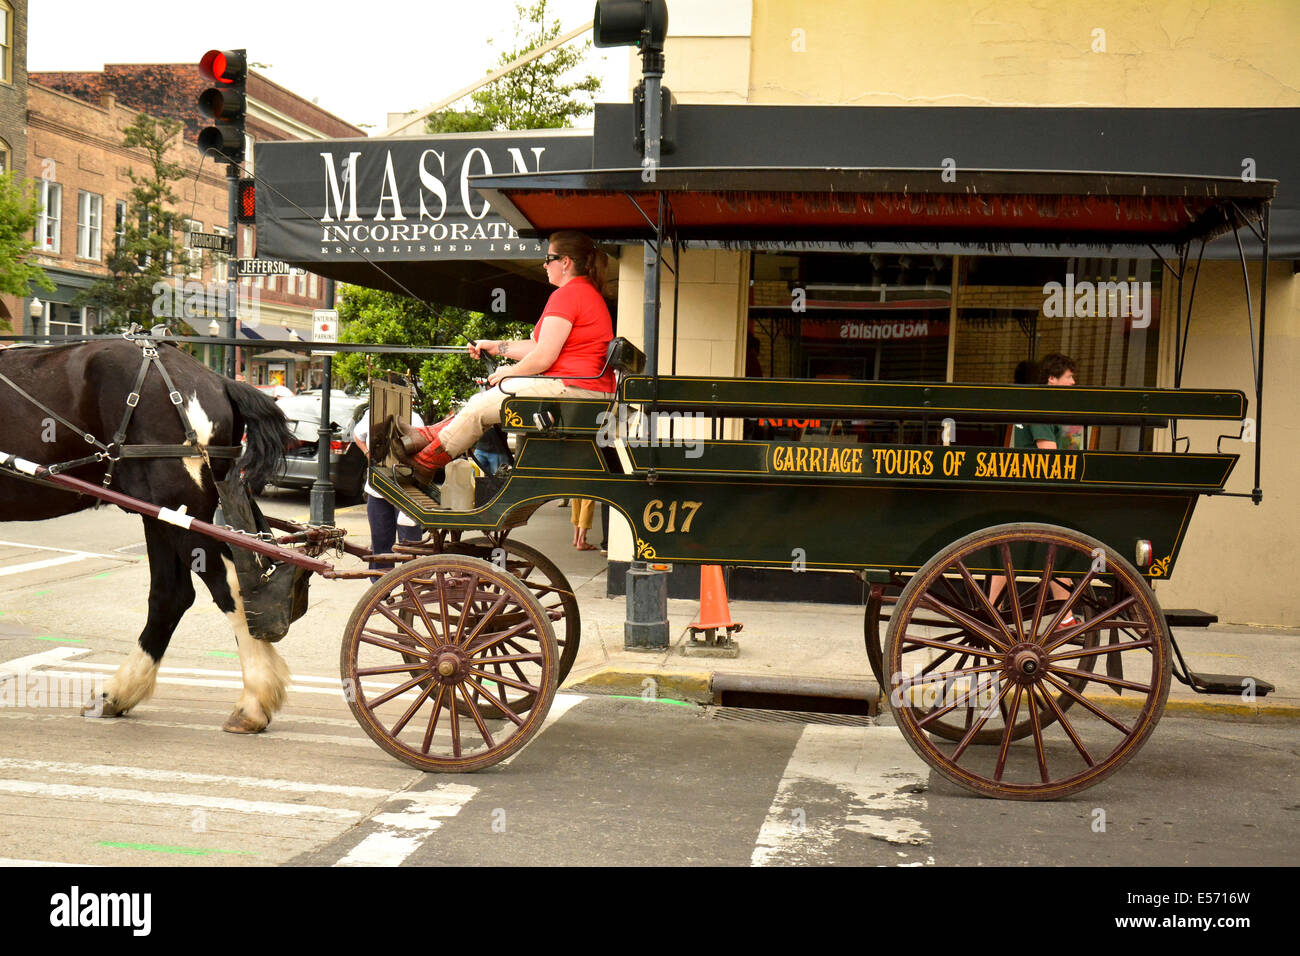 Un carruaje tirado por caballos para paseos turísticos y Jefferson Broughton cruza calles en el centro histórico de Savannah, GA, EE.UU. Foto de stock